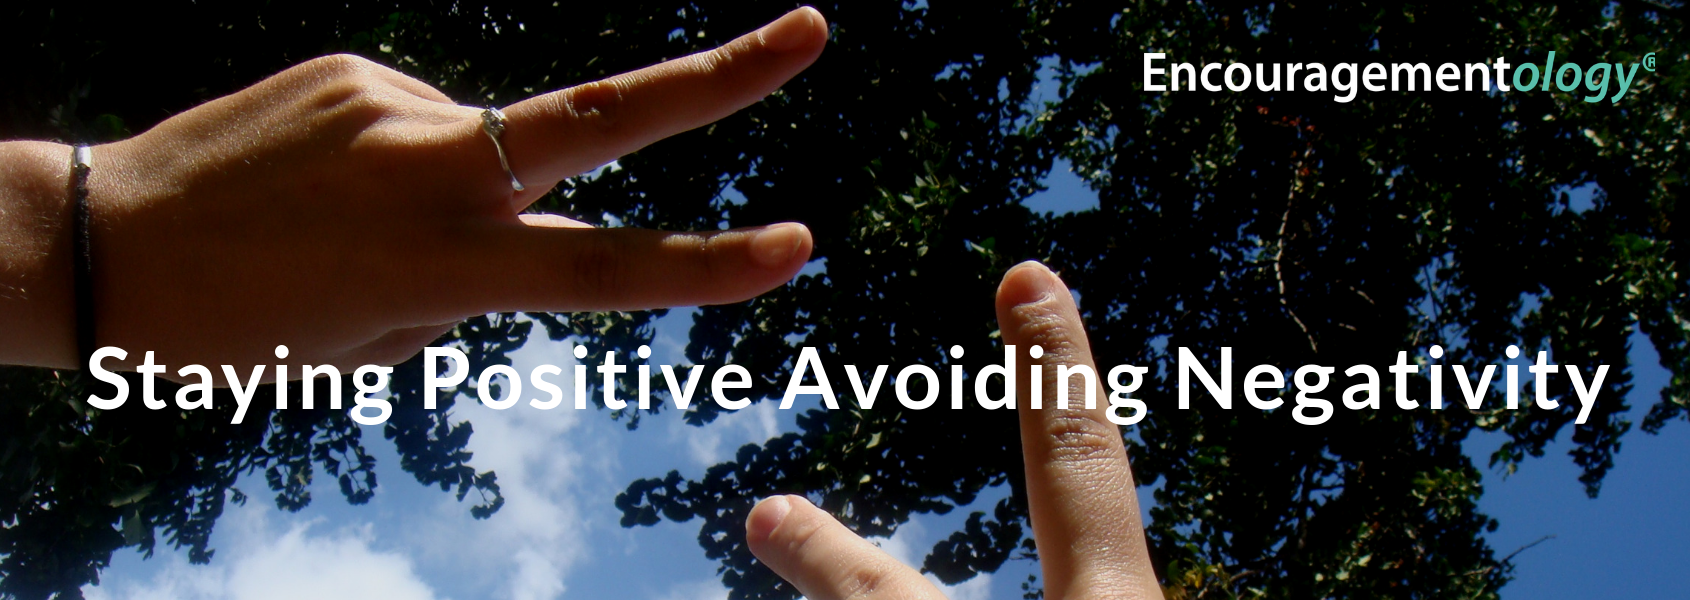 Staying Positive, Avoiding Negativity